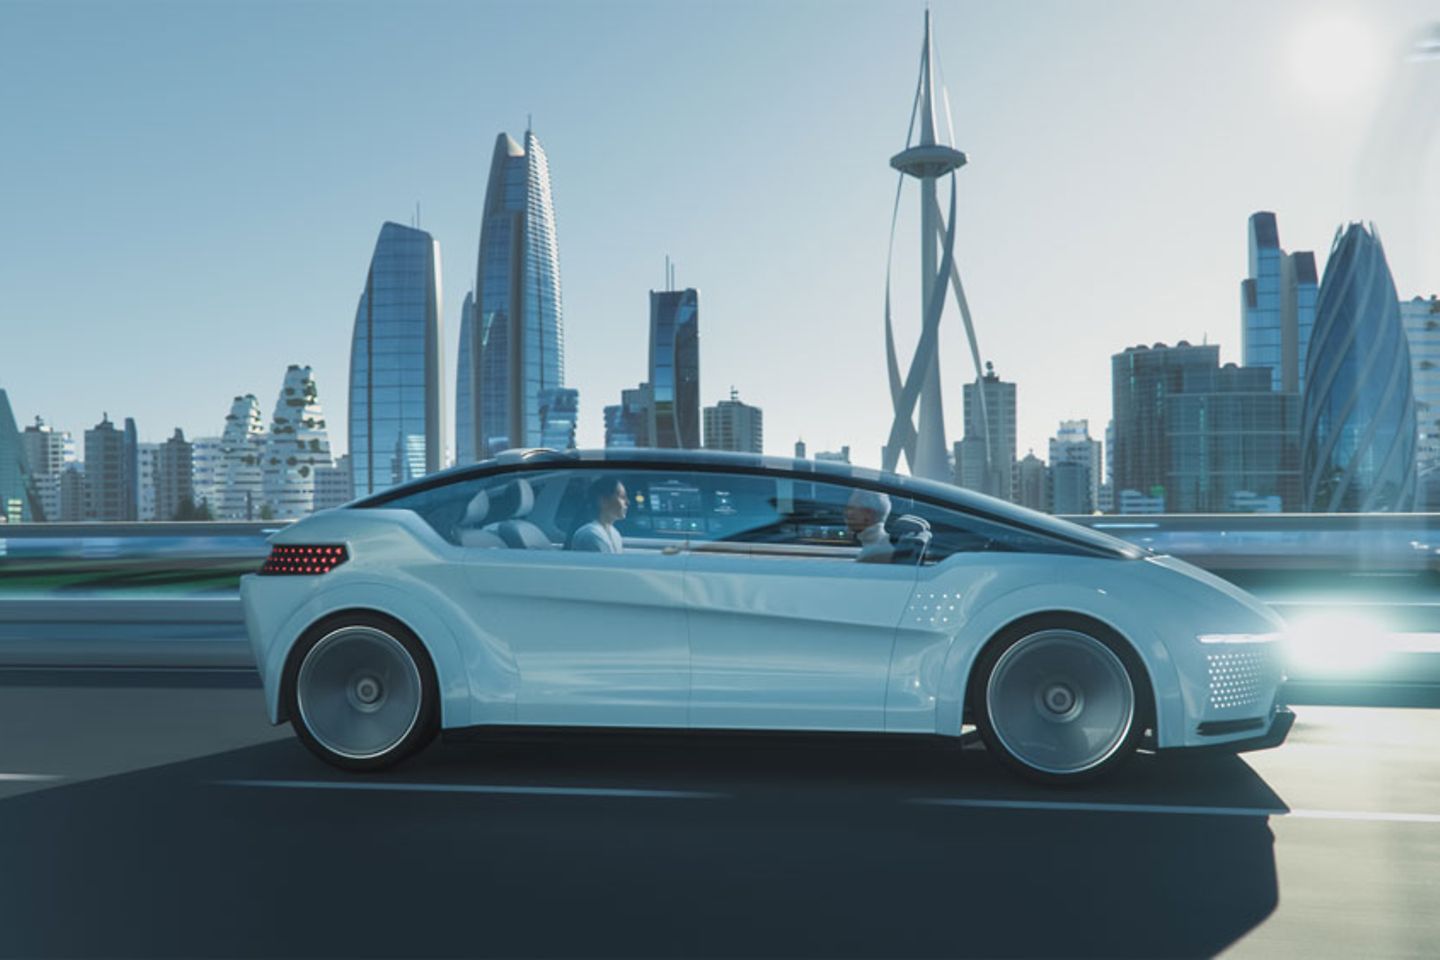 Opname van een futuristische auto die op een straat met wolkenkrabbers op de achtergrond rijdt